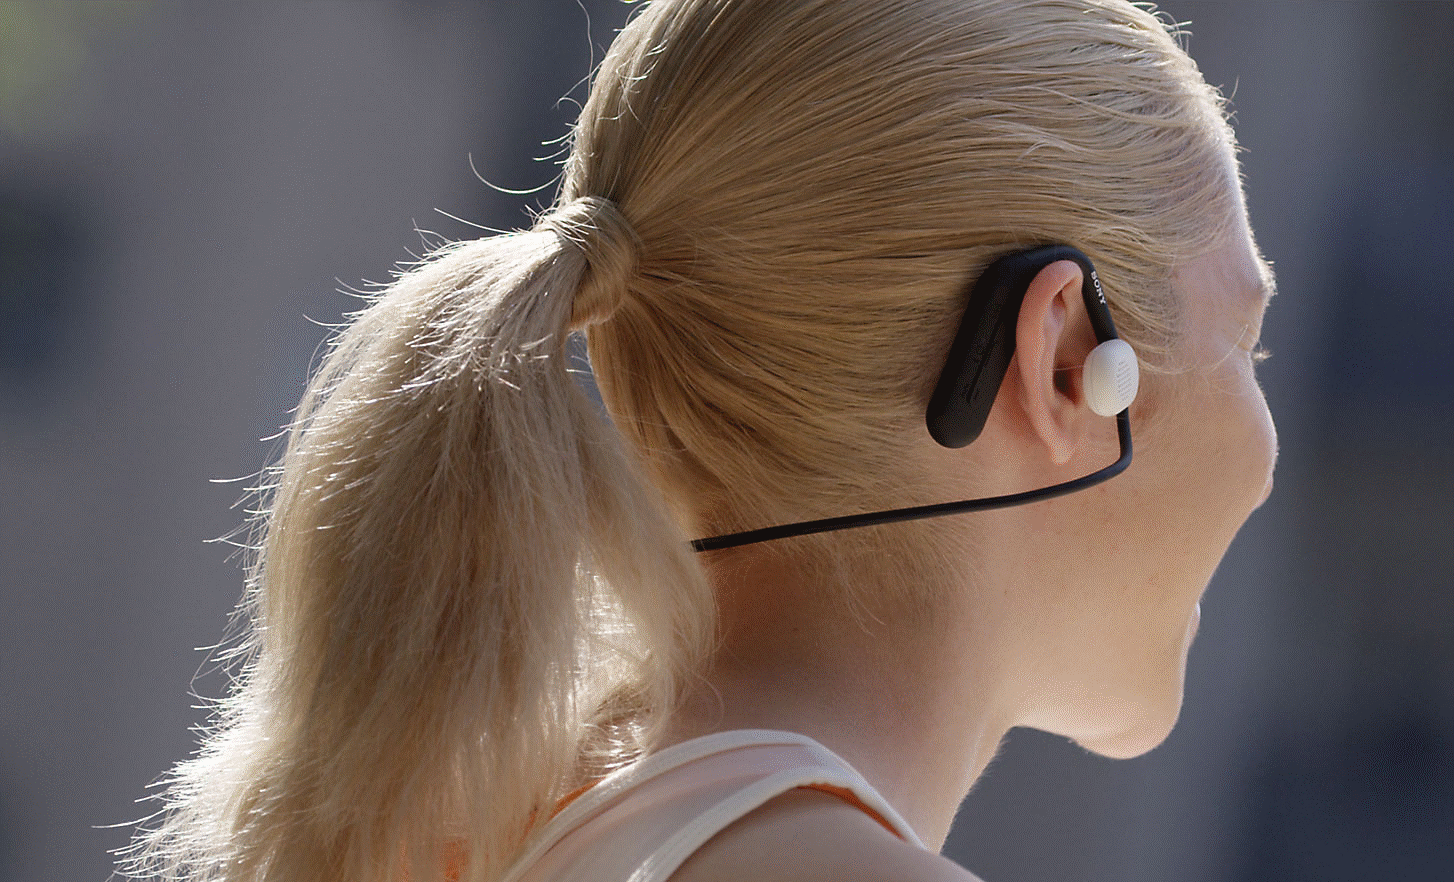 Gambar seorang wanita mengenakan headphone Float Run Sony yang diambil dari belakang